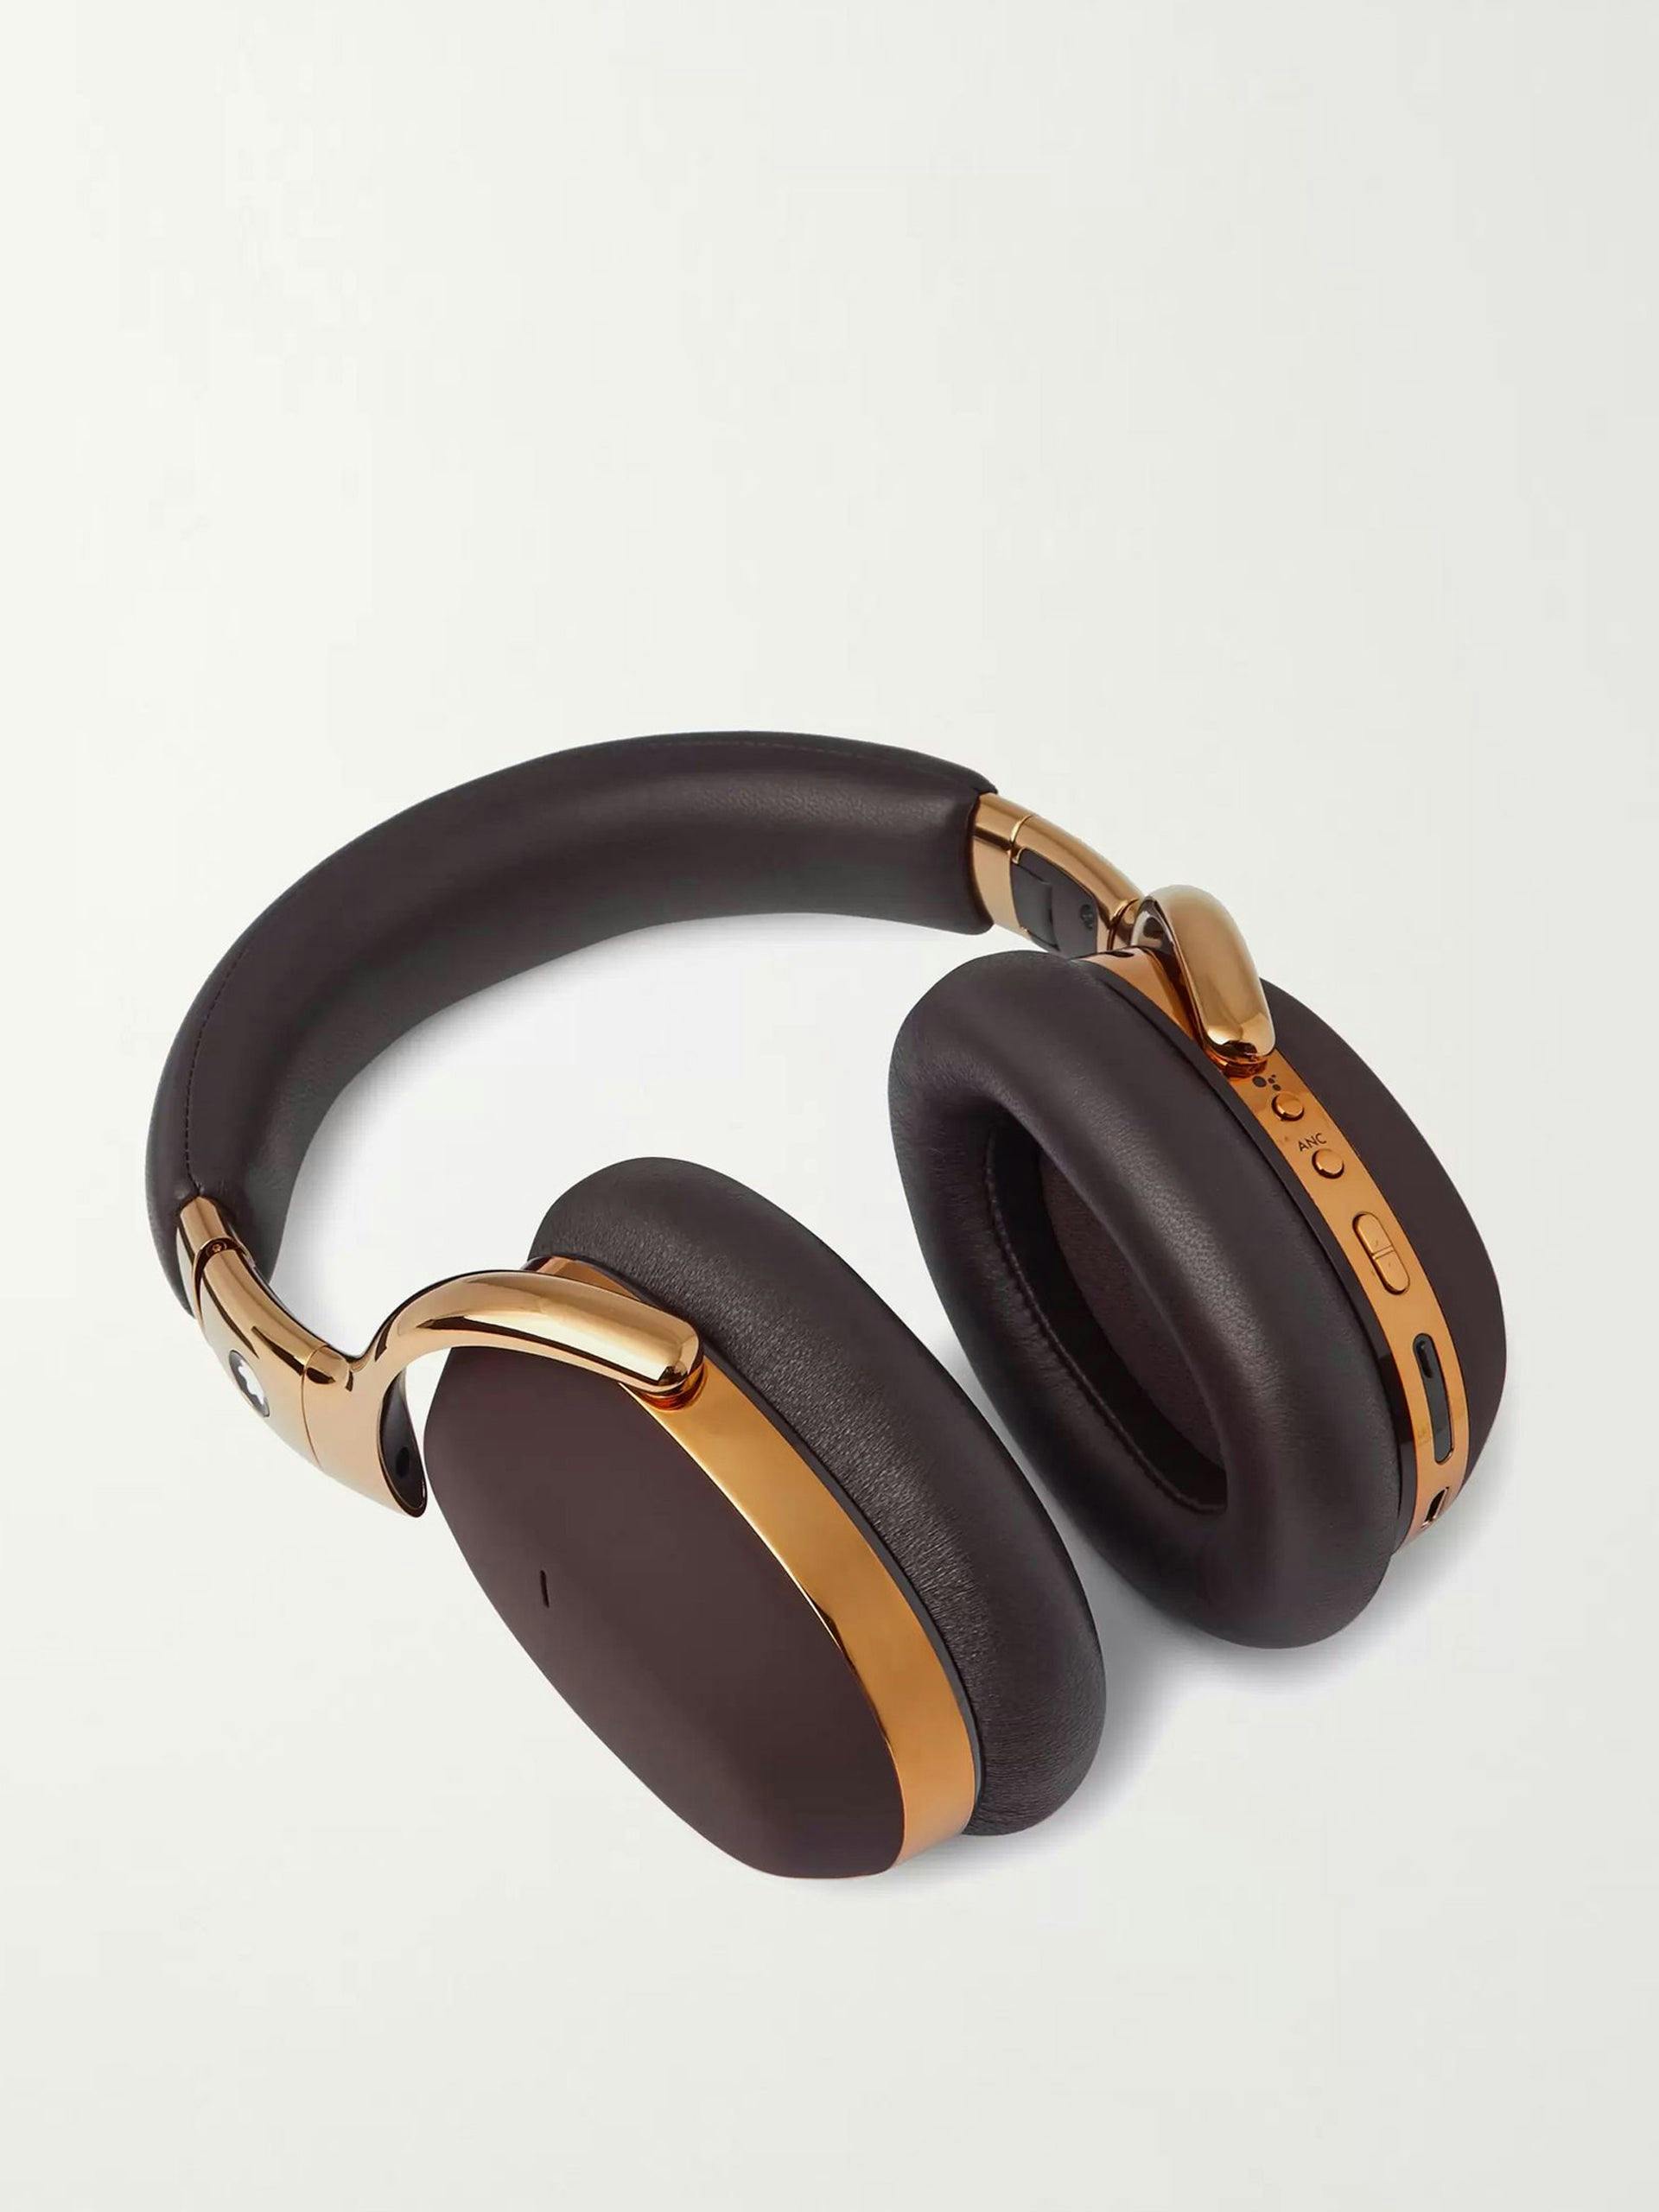 MB 01 leather wireless headphones